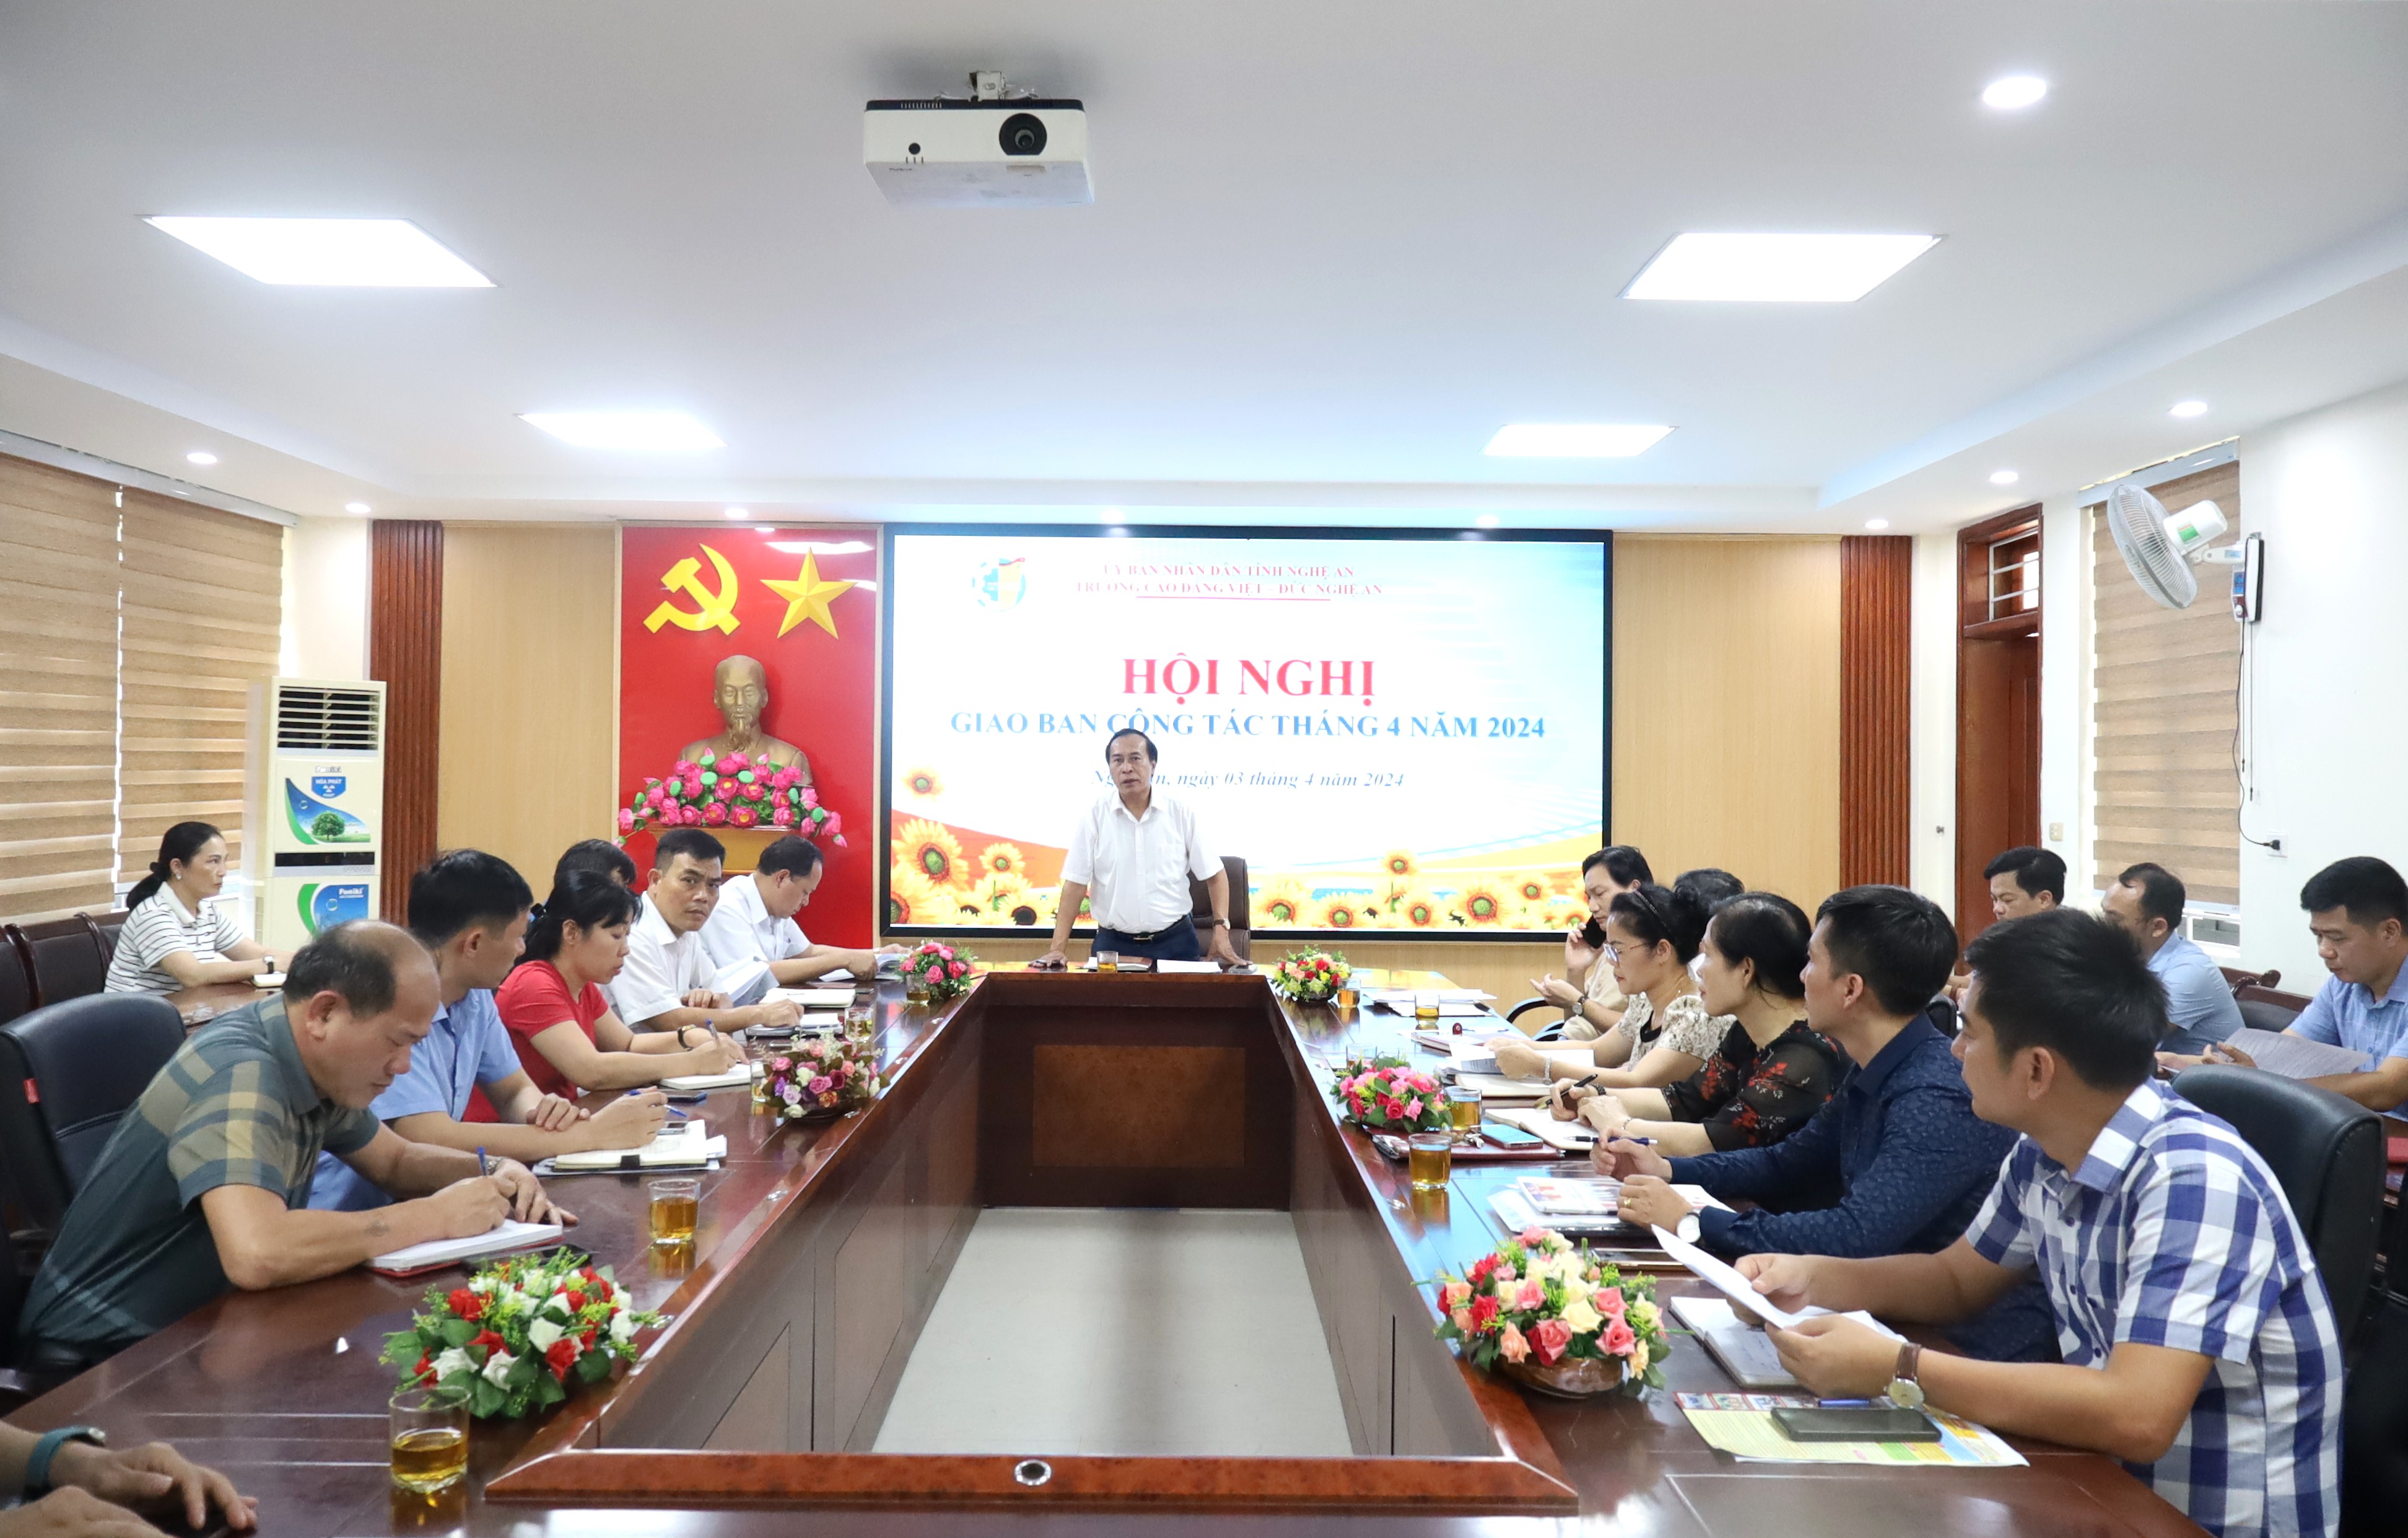 Trường Cao đẳng Việt – Đức Nghệ An tổ chức Hội nghị Giao ban công tác Tháng 4 năm 2024